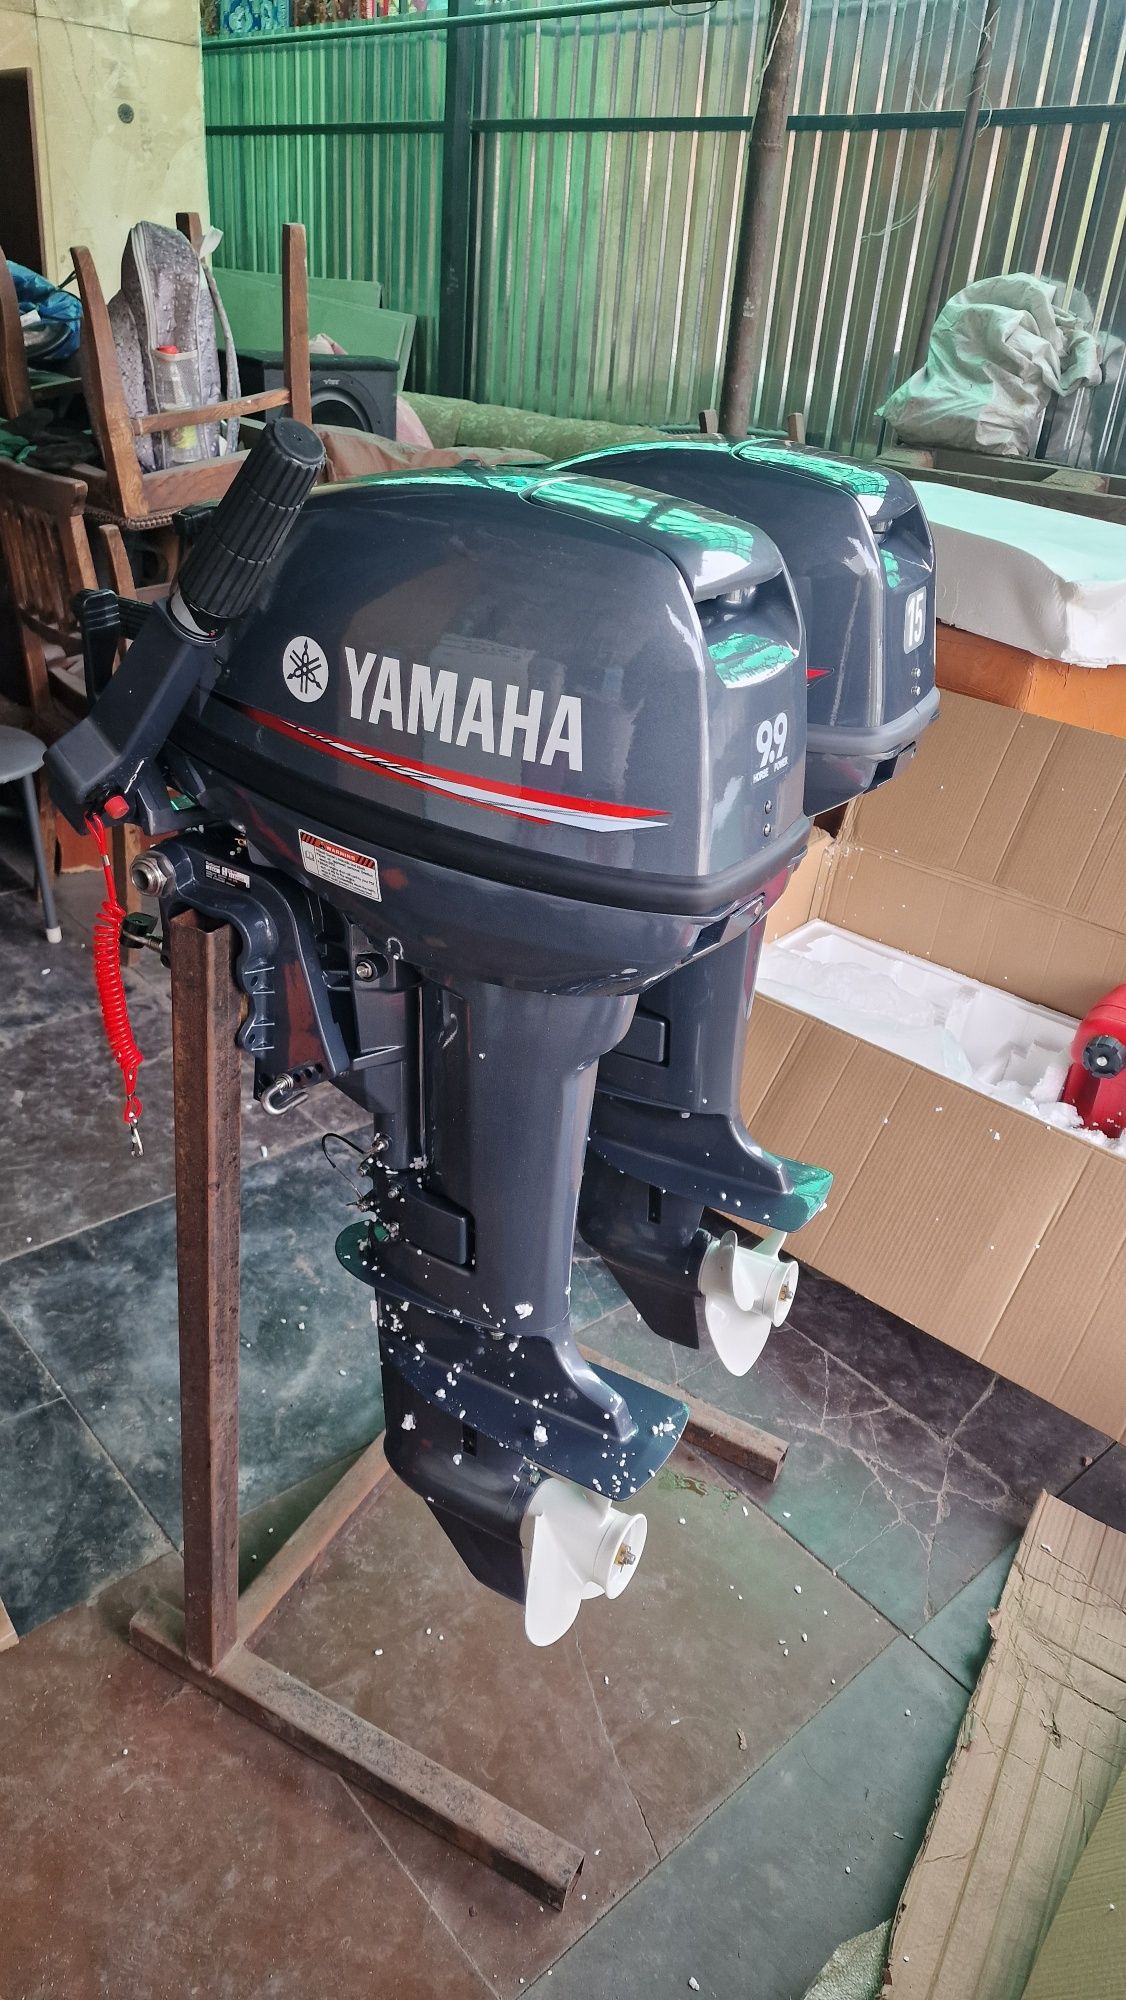 Yamaha новый лодочный мотор 9.9 15 лс 246 кубиков 36кг китаец